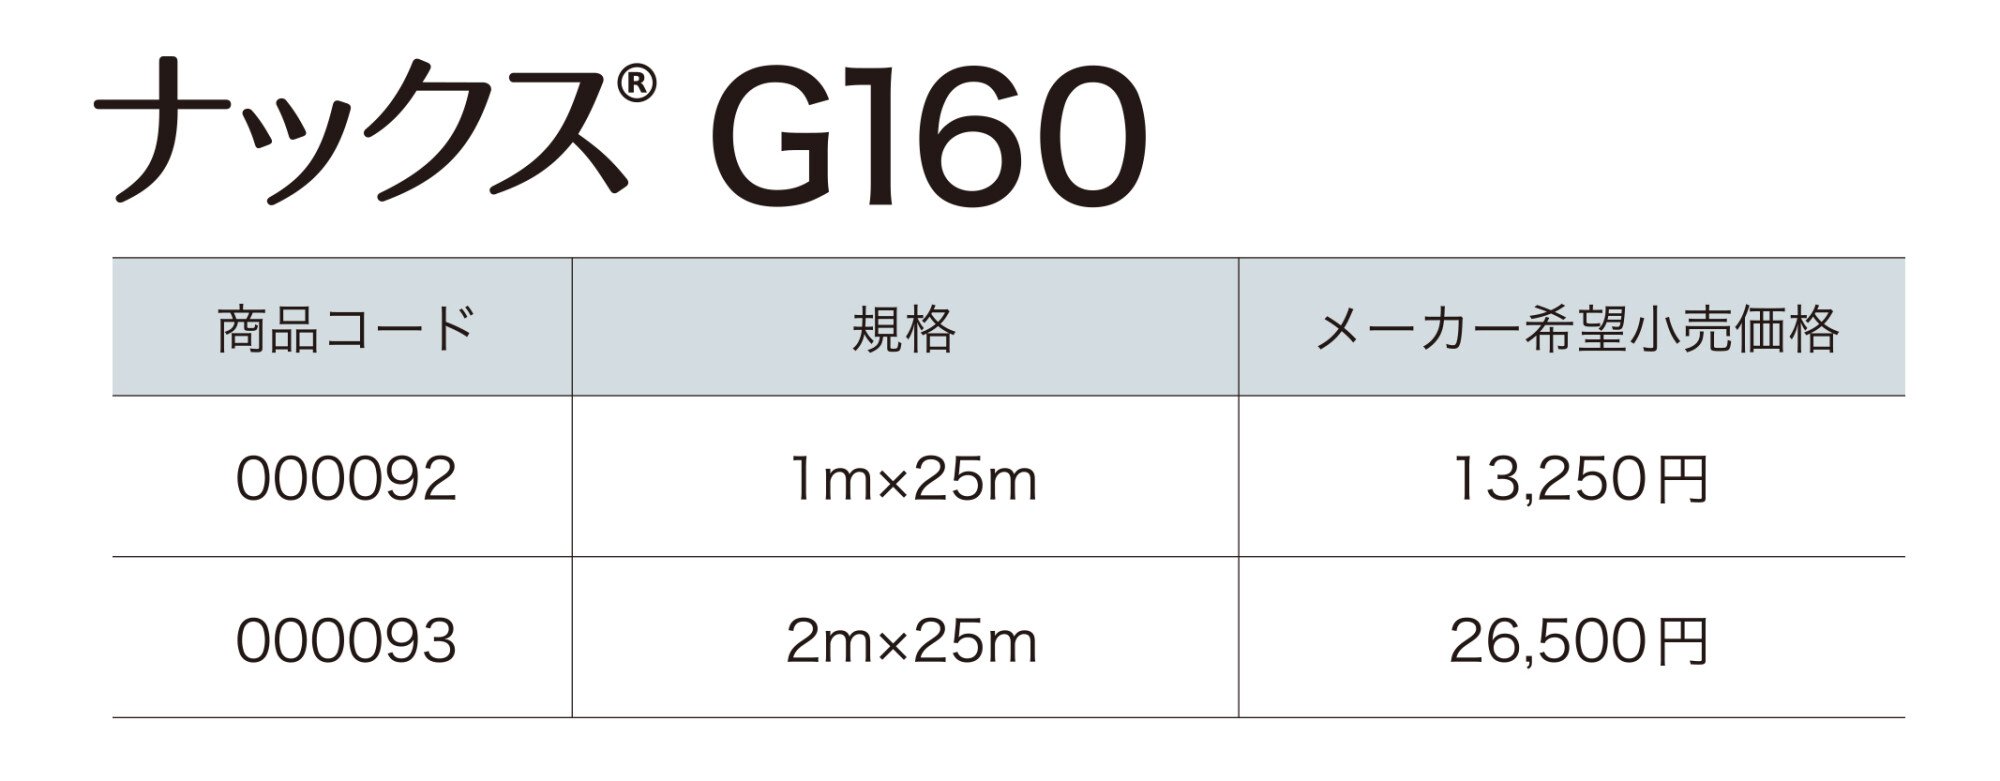 ナックス®︎ G160【2023年版】_価格_1